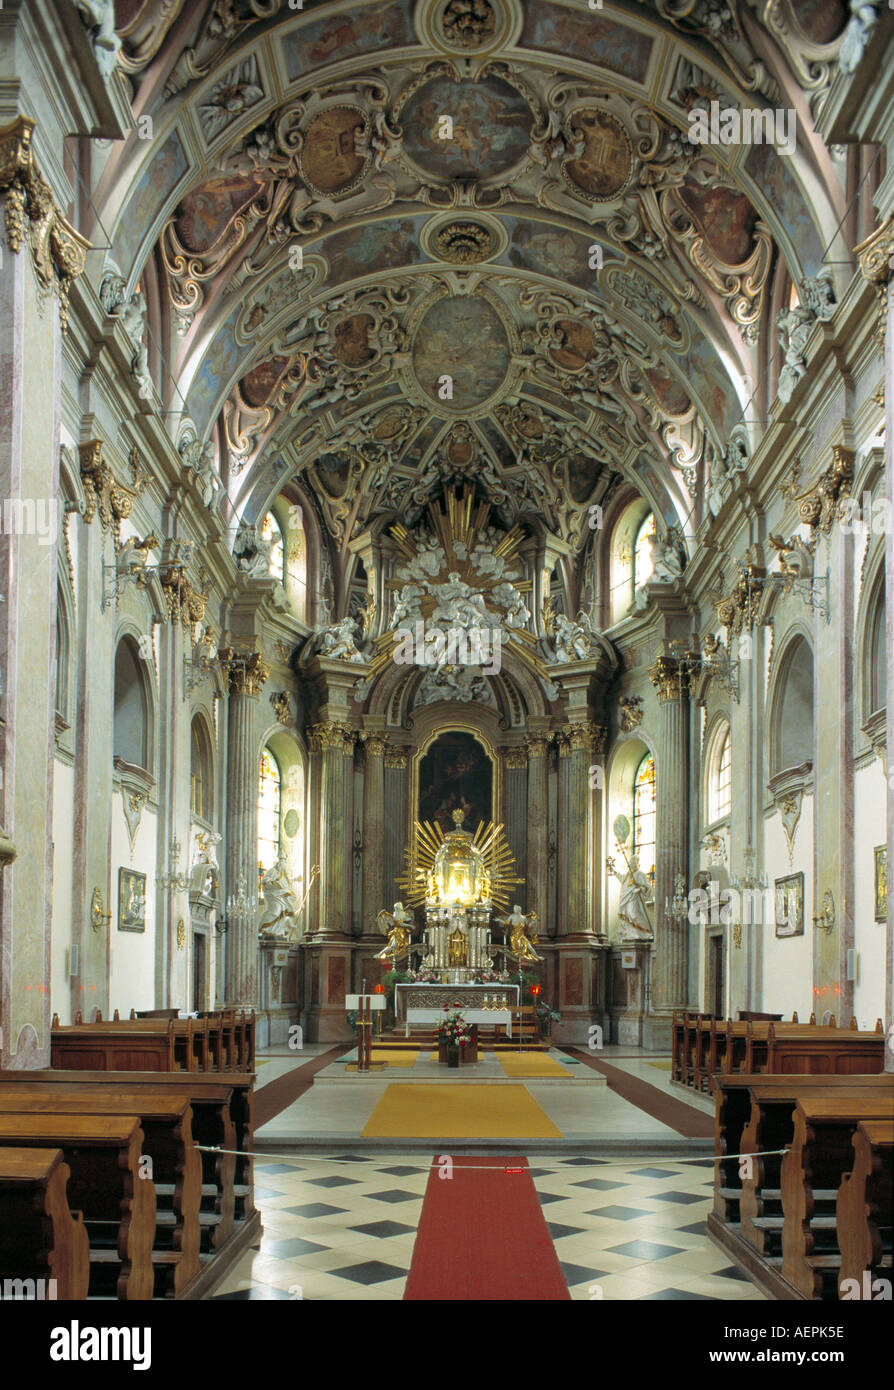 Olomouc/Olmütz-Heiligenberg, Kloster und Wallfahrtskirche Mariäe Heimsuchung, Blick nach Osten Foto Stock